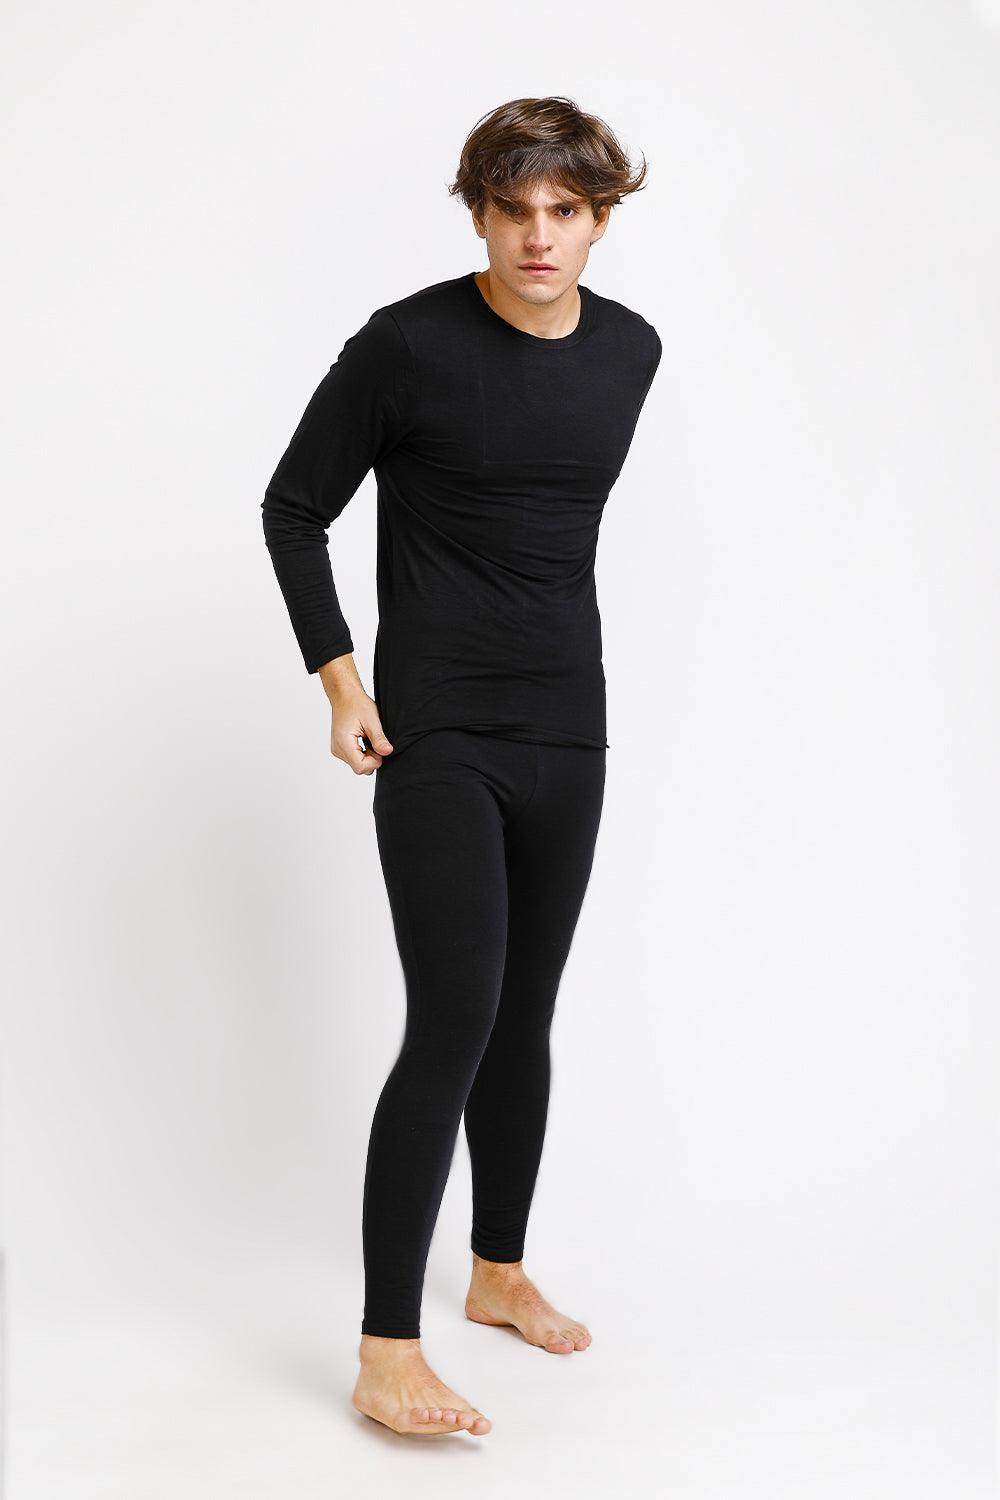 COOL 32 - חולצה תרמית לגבר בצבע שחור - MASHBIR//365